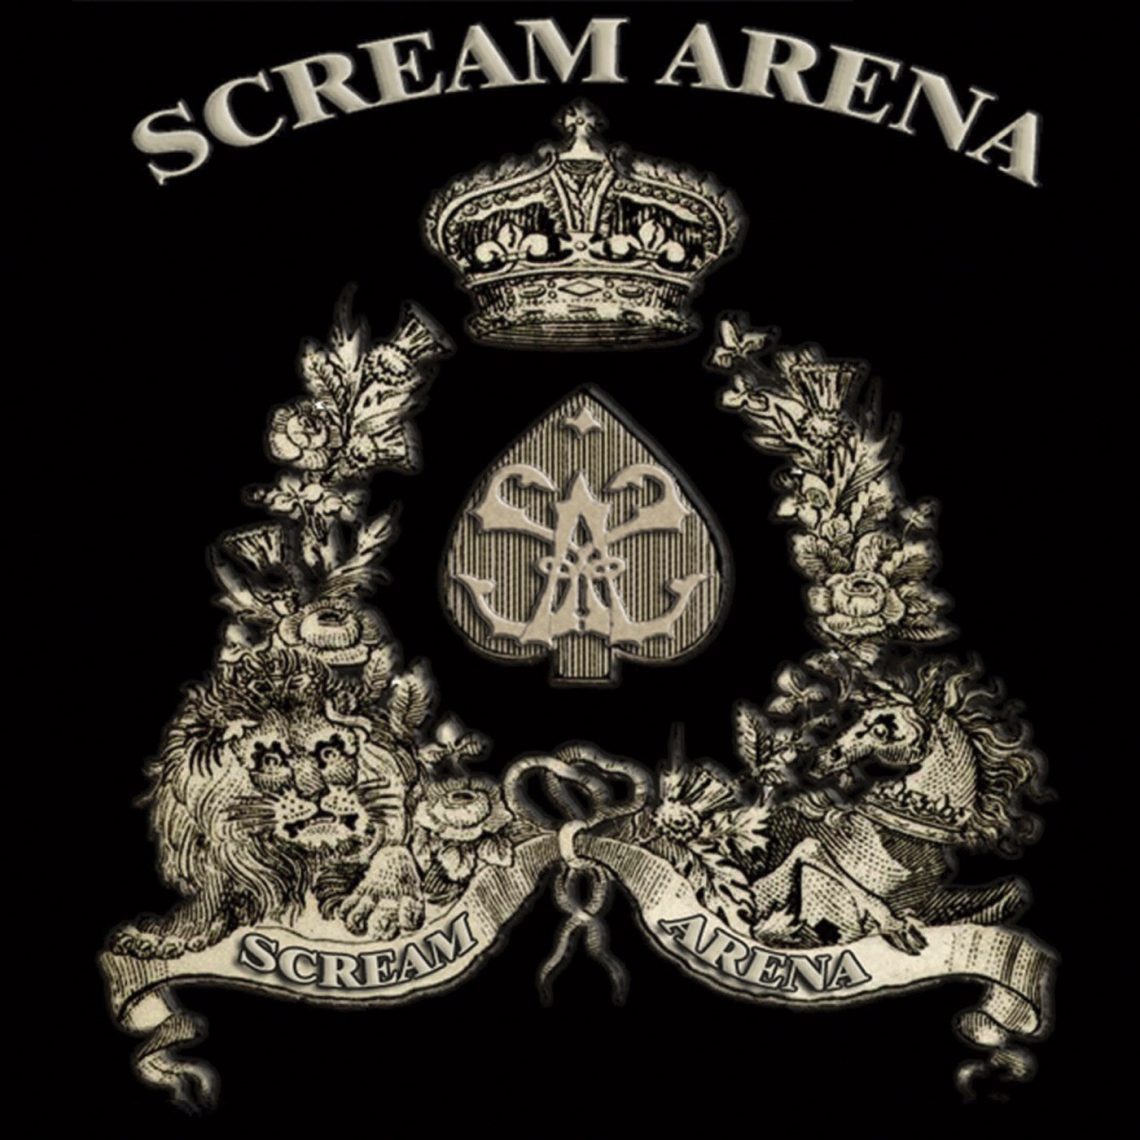 Scream Arena – Scream Arena